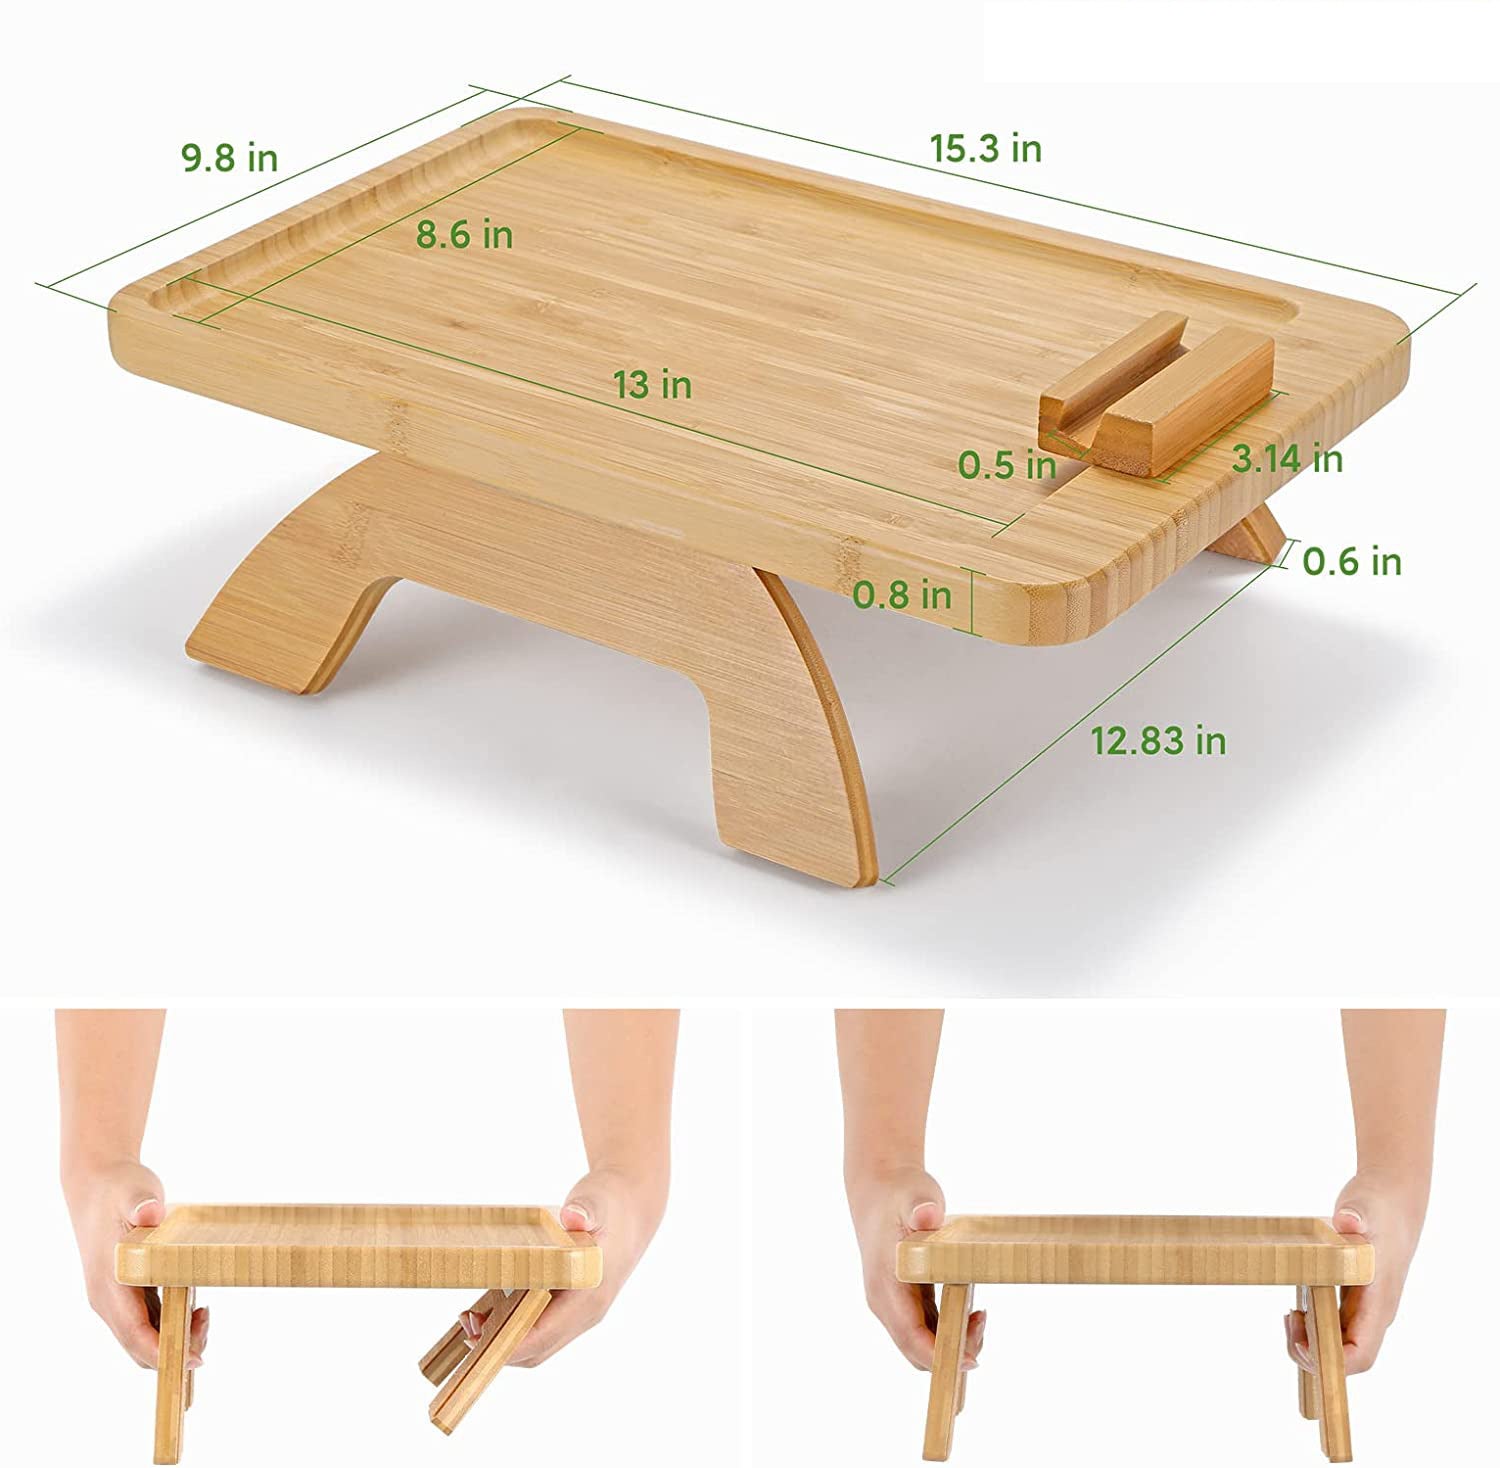 Bamboo Sofa Tray Home Decor Portable Folding - Sofa Trays -  Trend Goods